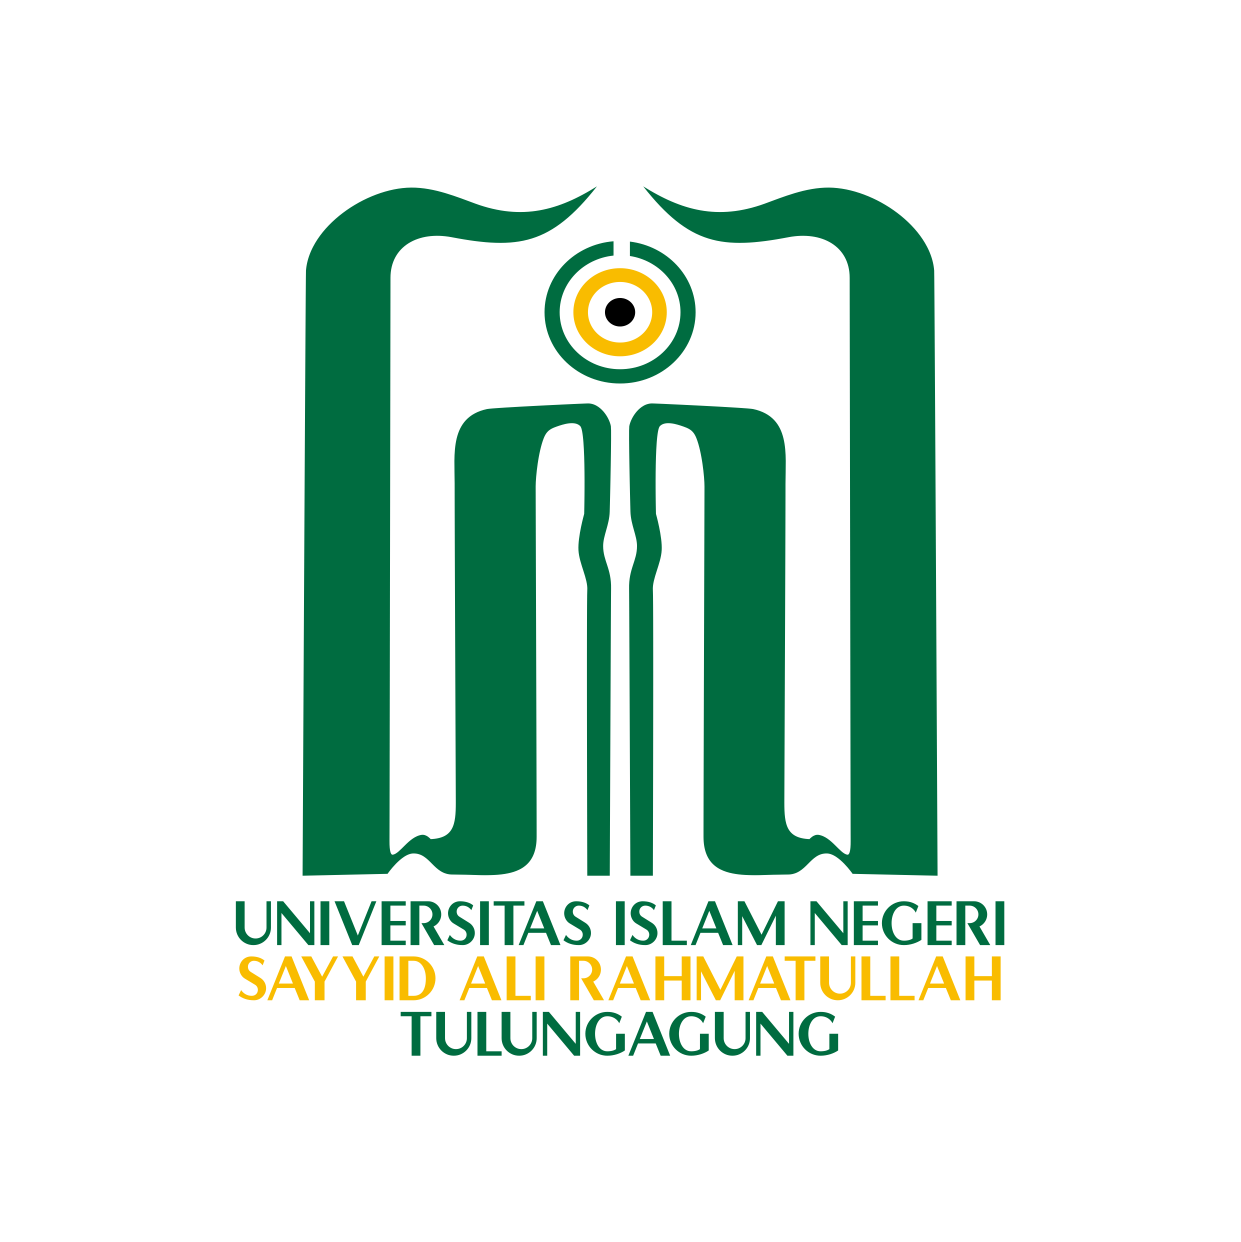 Visi, Misi, dan Tujuan Universitas Islam Negeri Sayyid Ali Rahmatullah Tulungagung